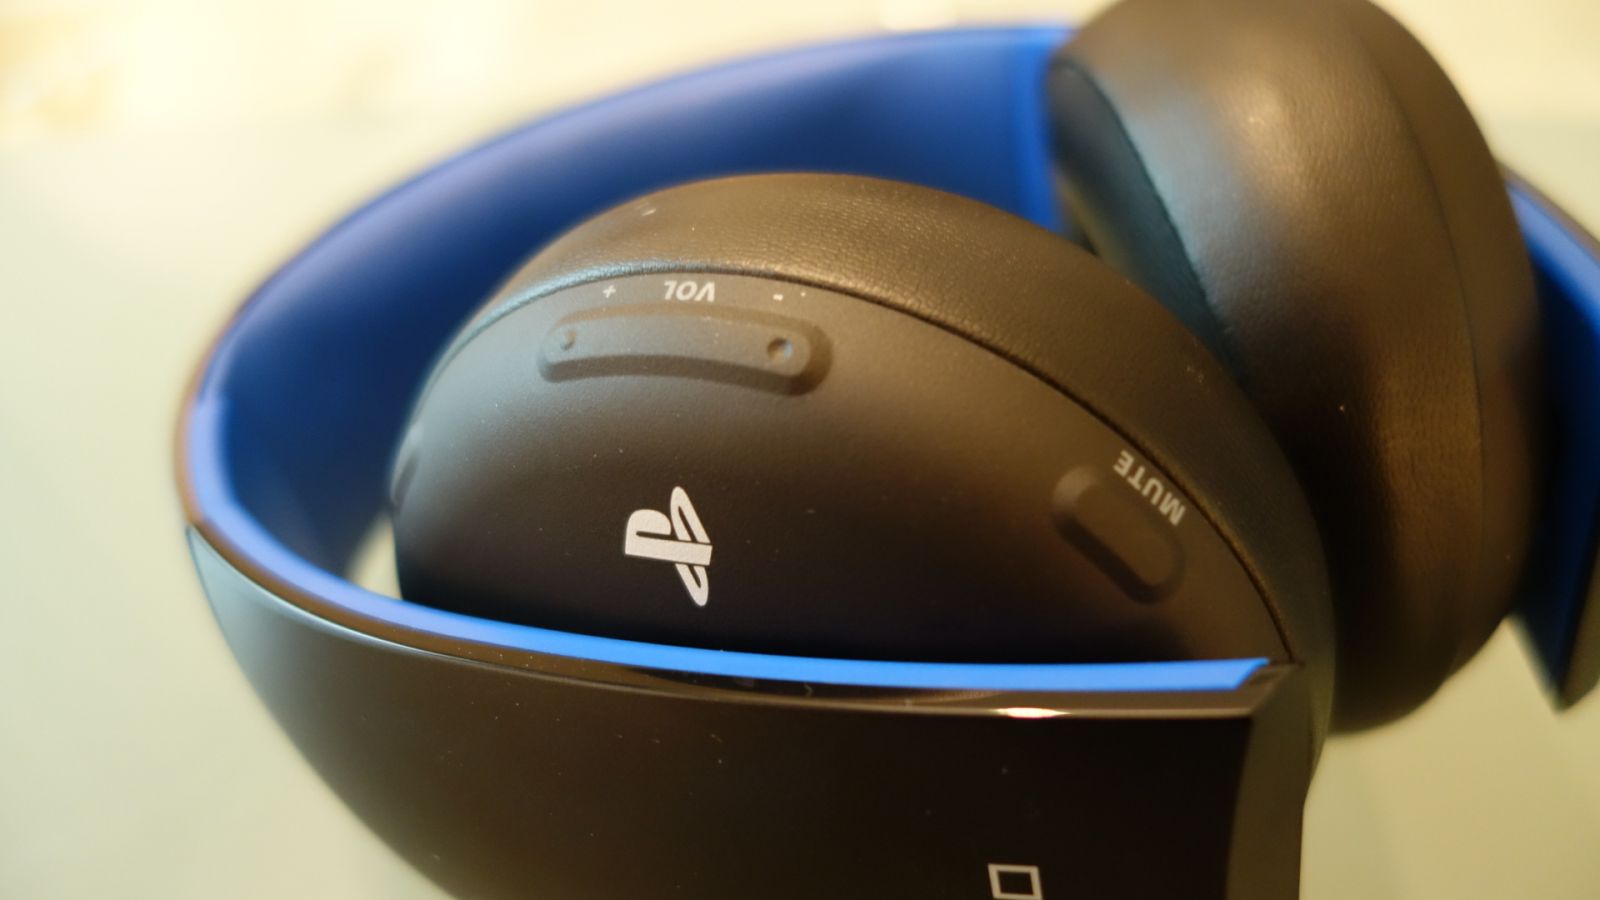 مراجعة سماعات قيمنق سوني بلاي ستيشن اللاسلكية للالعاب Sony Playstation Gaming Headset